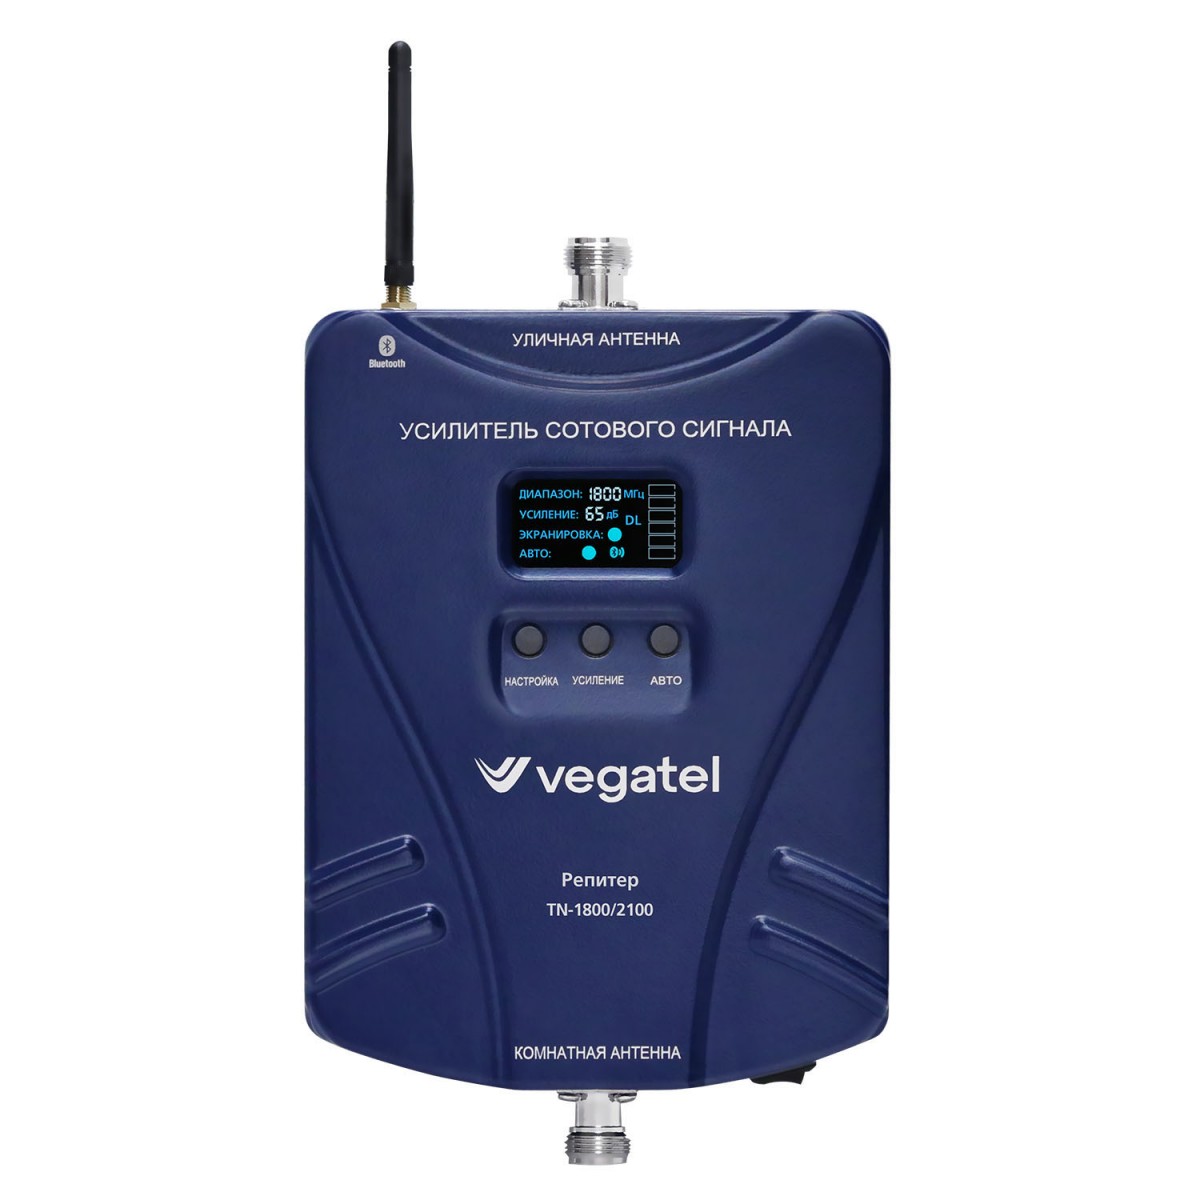 Детальное изображение товара "Комплект усиления сотовой связи Vegatel TN-1800/2100" из каталога оборудования Антенна76